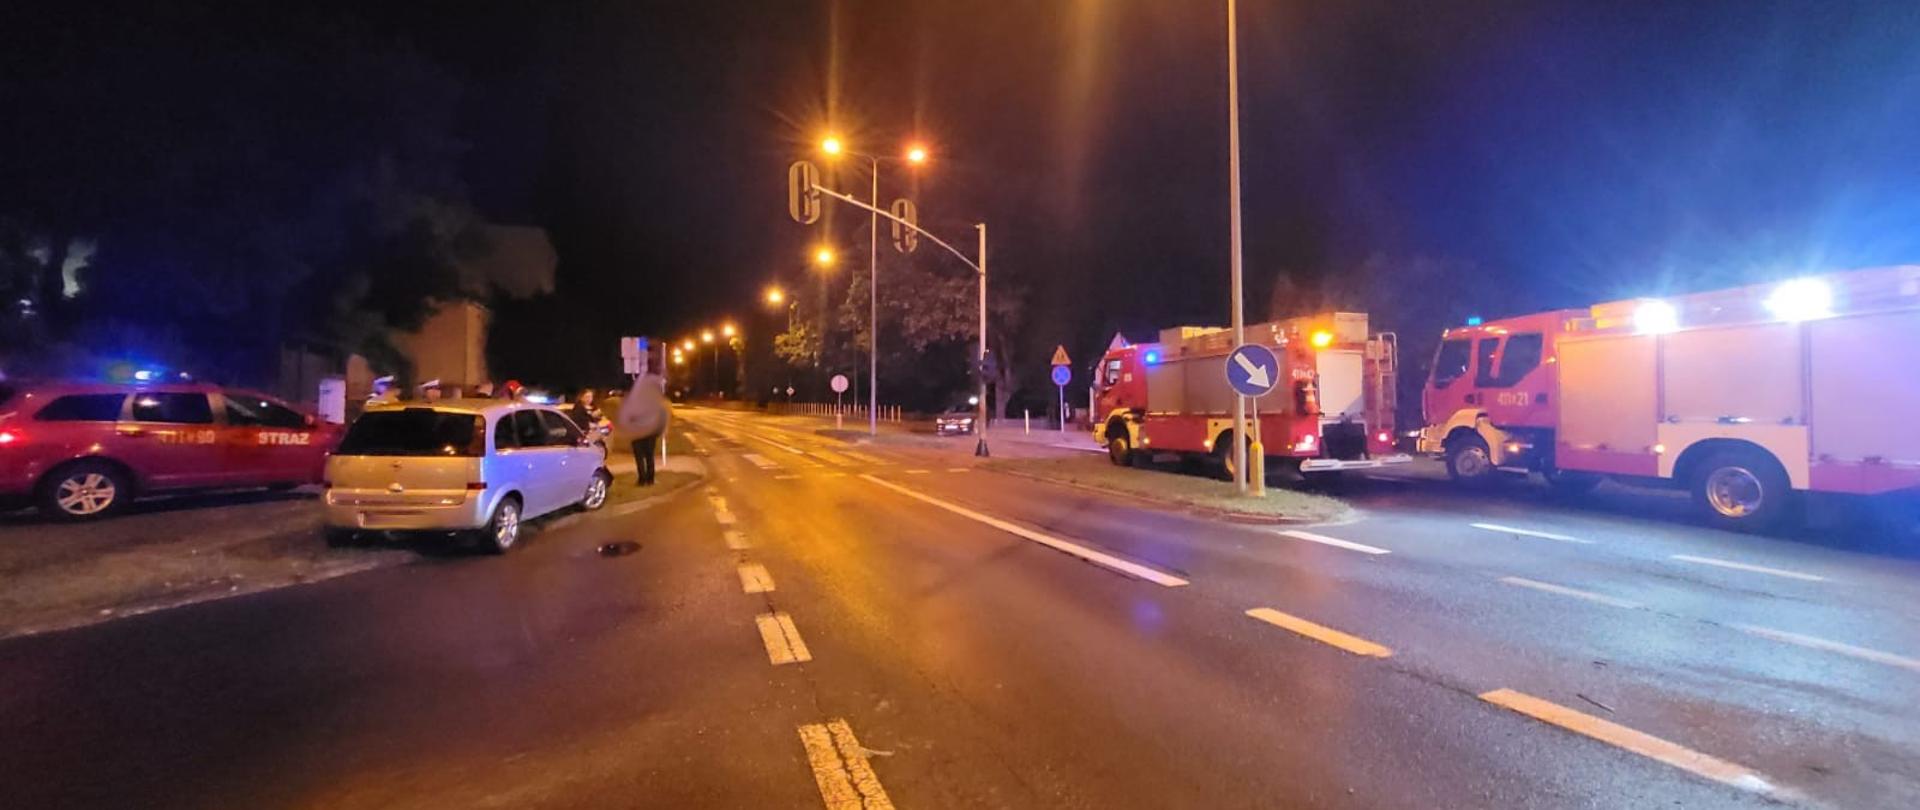 Pora nocna, zdjęcie przy sztucznym oświetleniu. Samochód osobowy po wypadku, stoi na krawędzi jezdni i pobocza. Wzdłuż jezdni widoczne dwa duże wozy strażackie. 